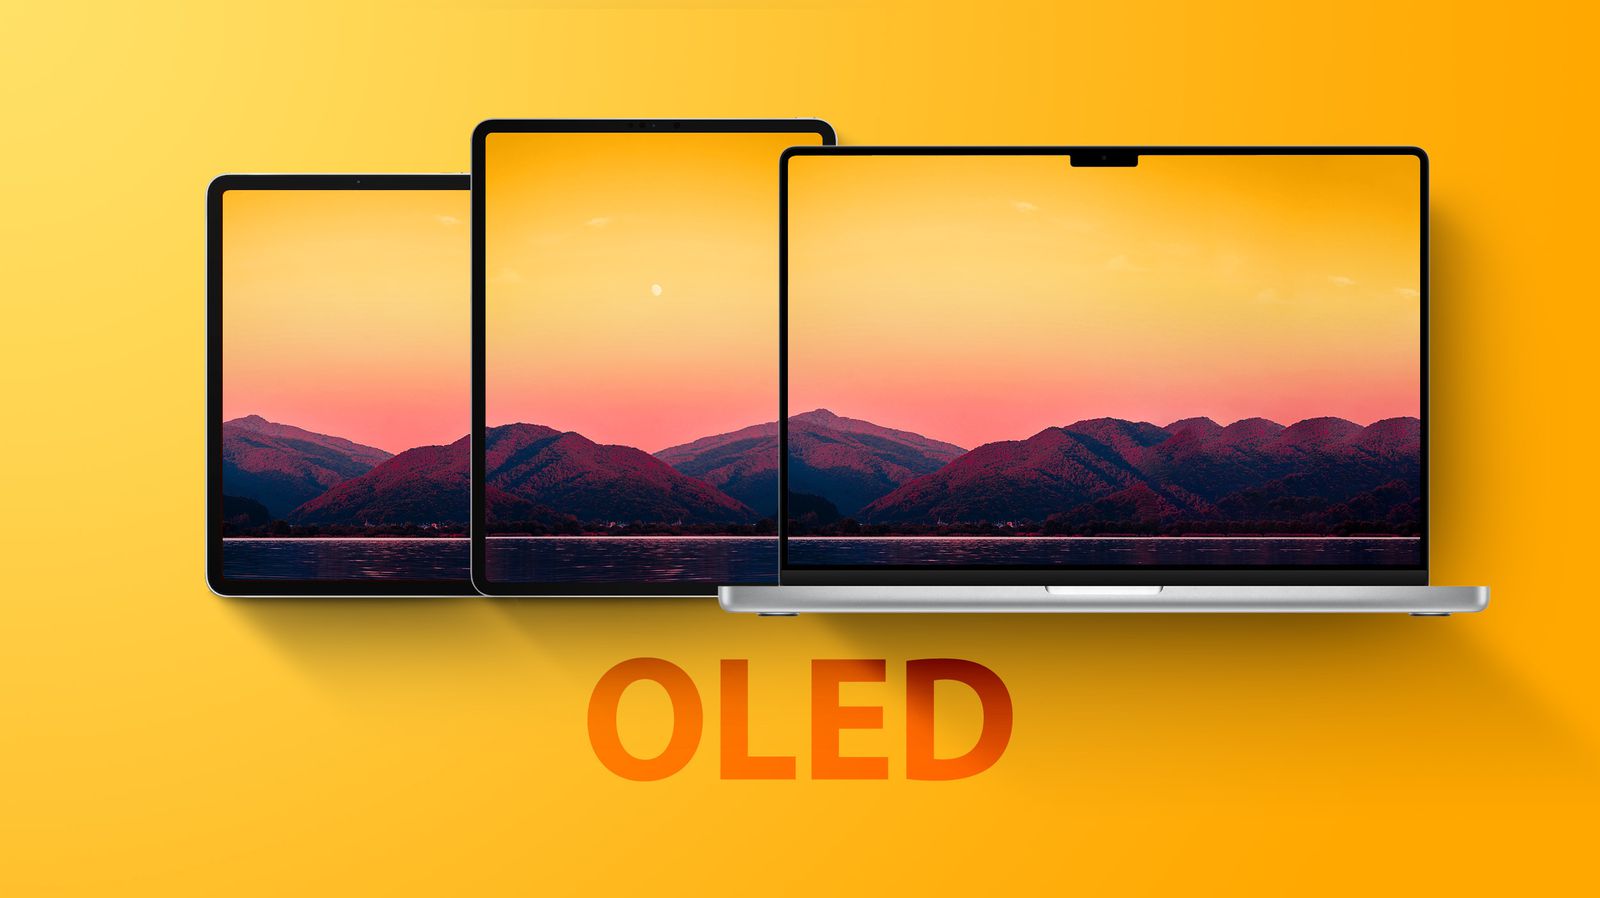 Μέσα στα επόμενα χρόνια, όλες σχεδόν οι συσκευές της Apple θα διαθέτουν οθόνες OLED